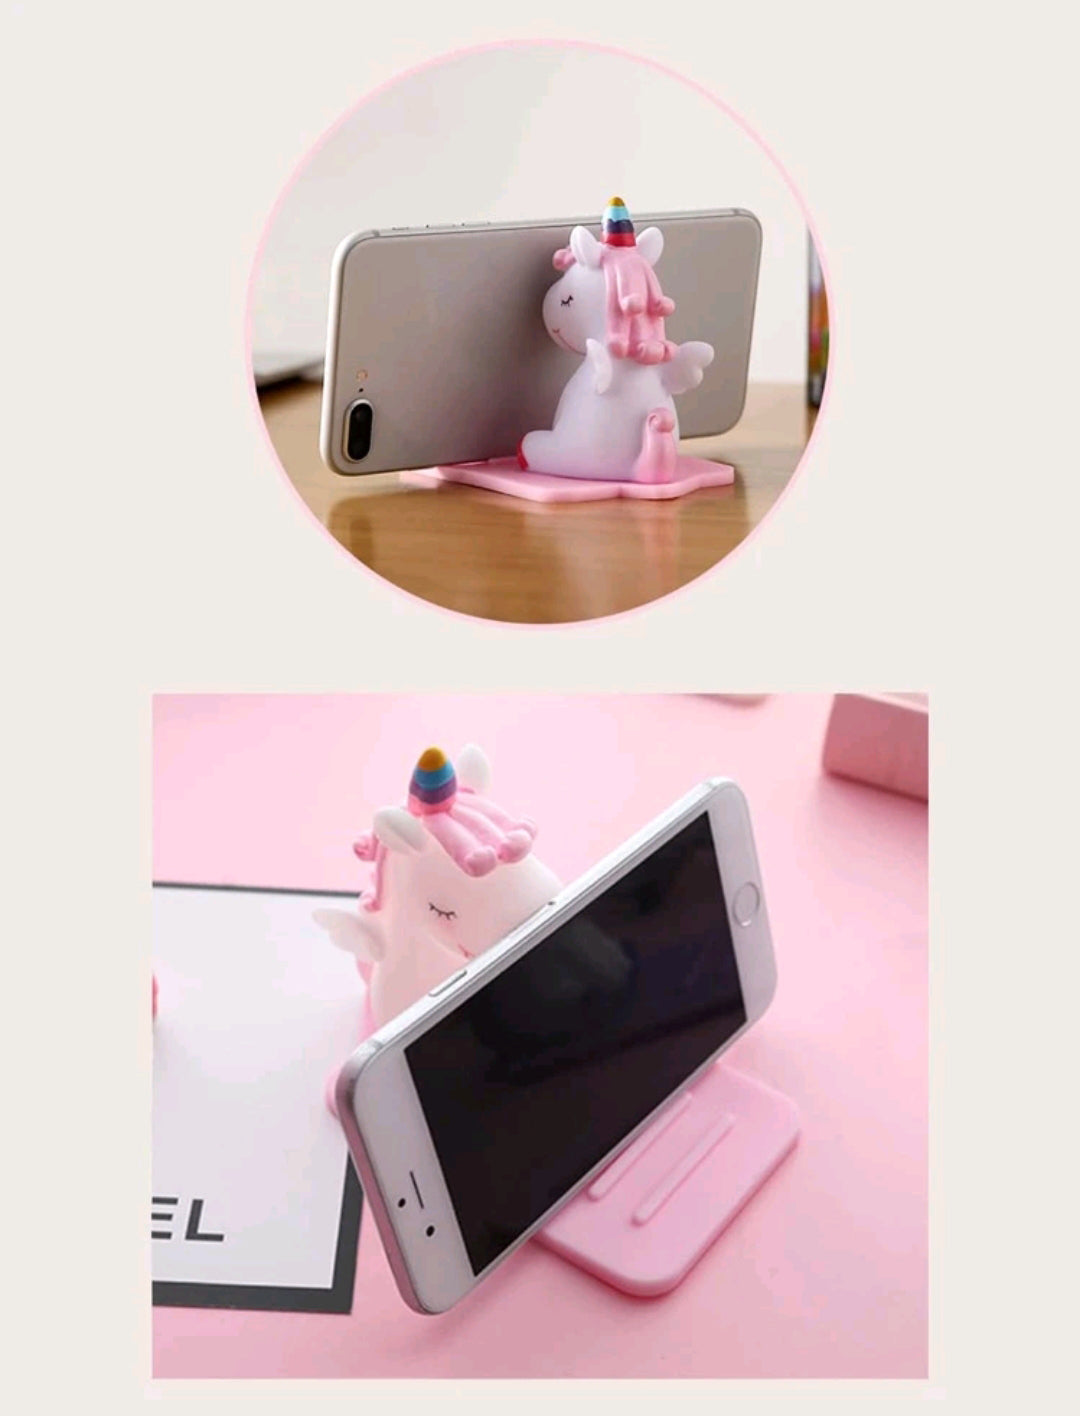 حامل تلفون سطح المكتب تصميم وحيد القرن unicorn design desktop phone holder